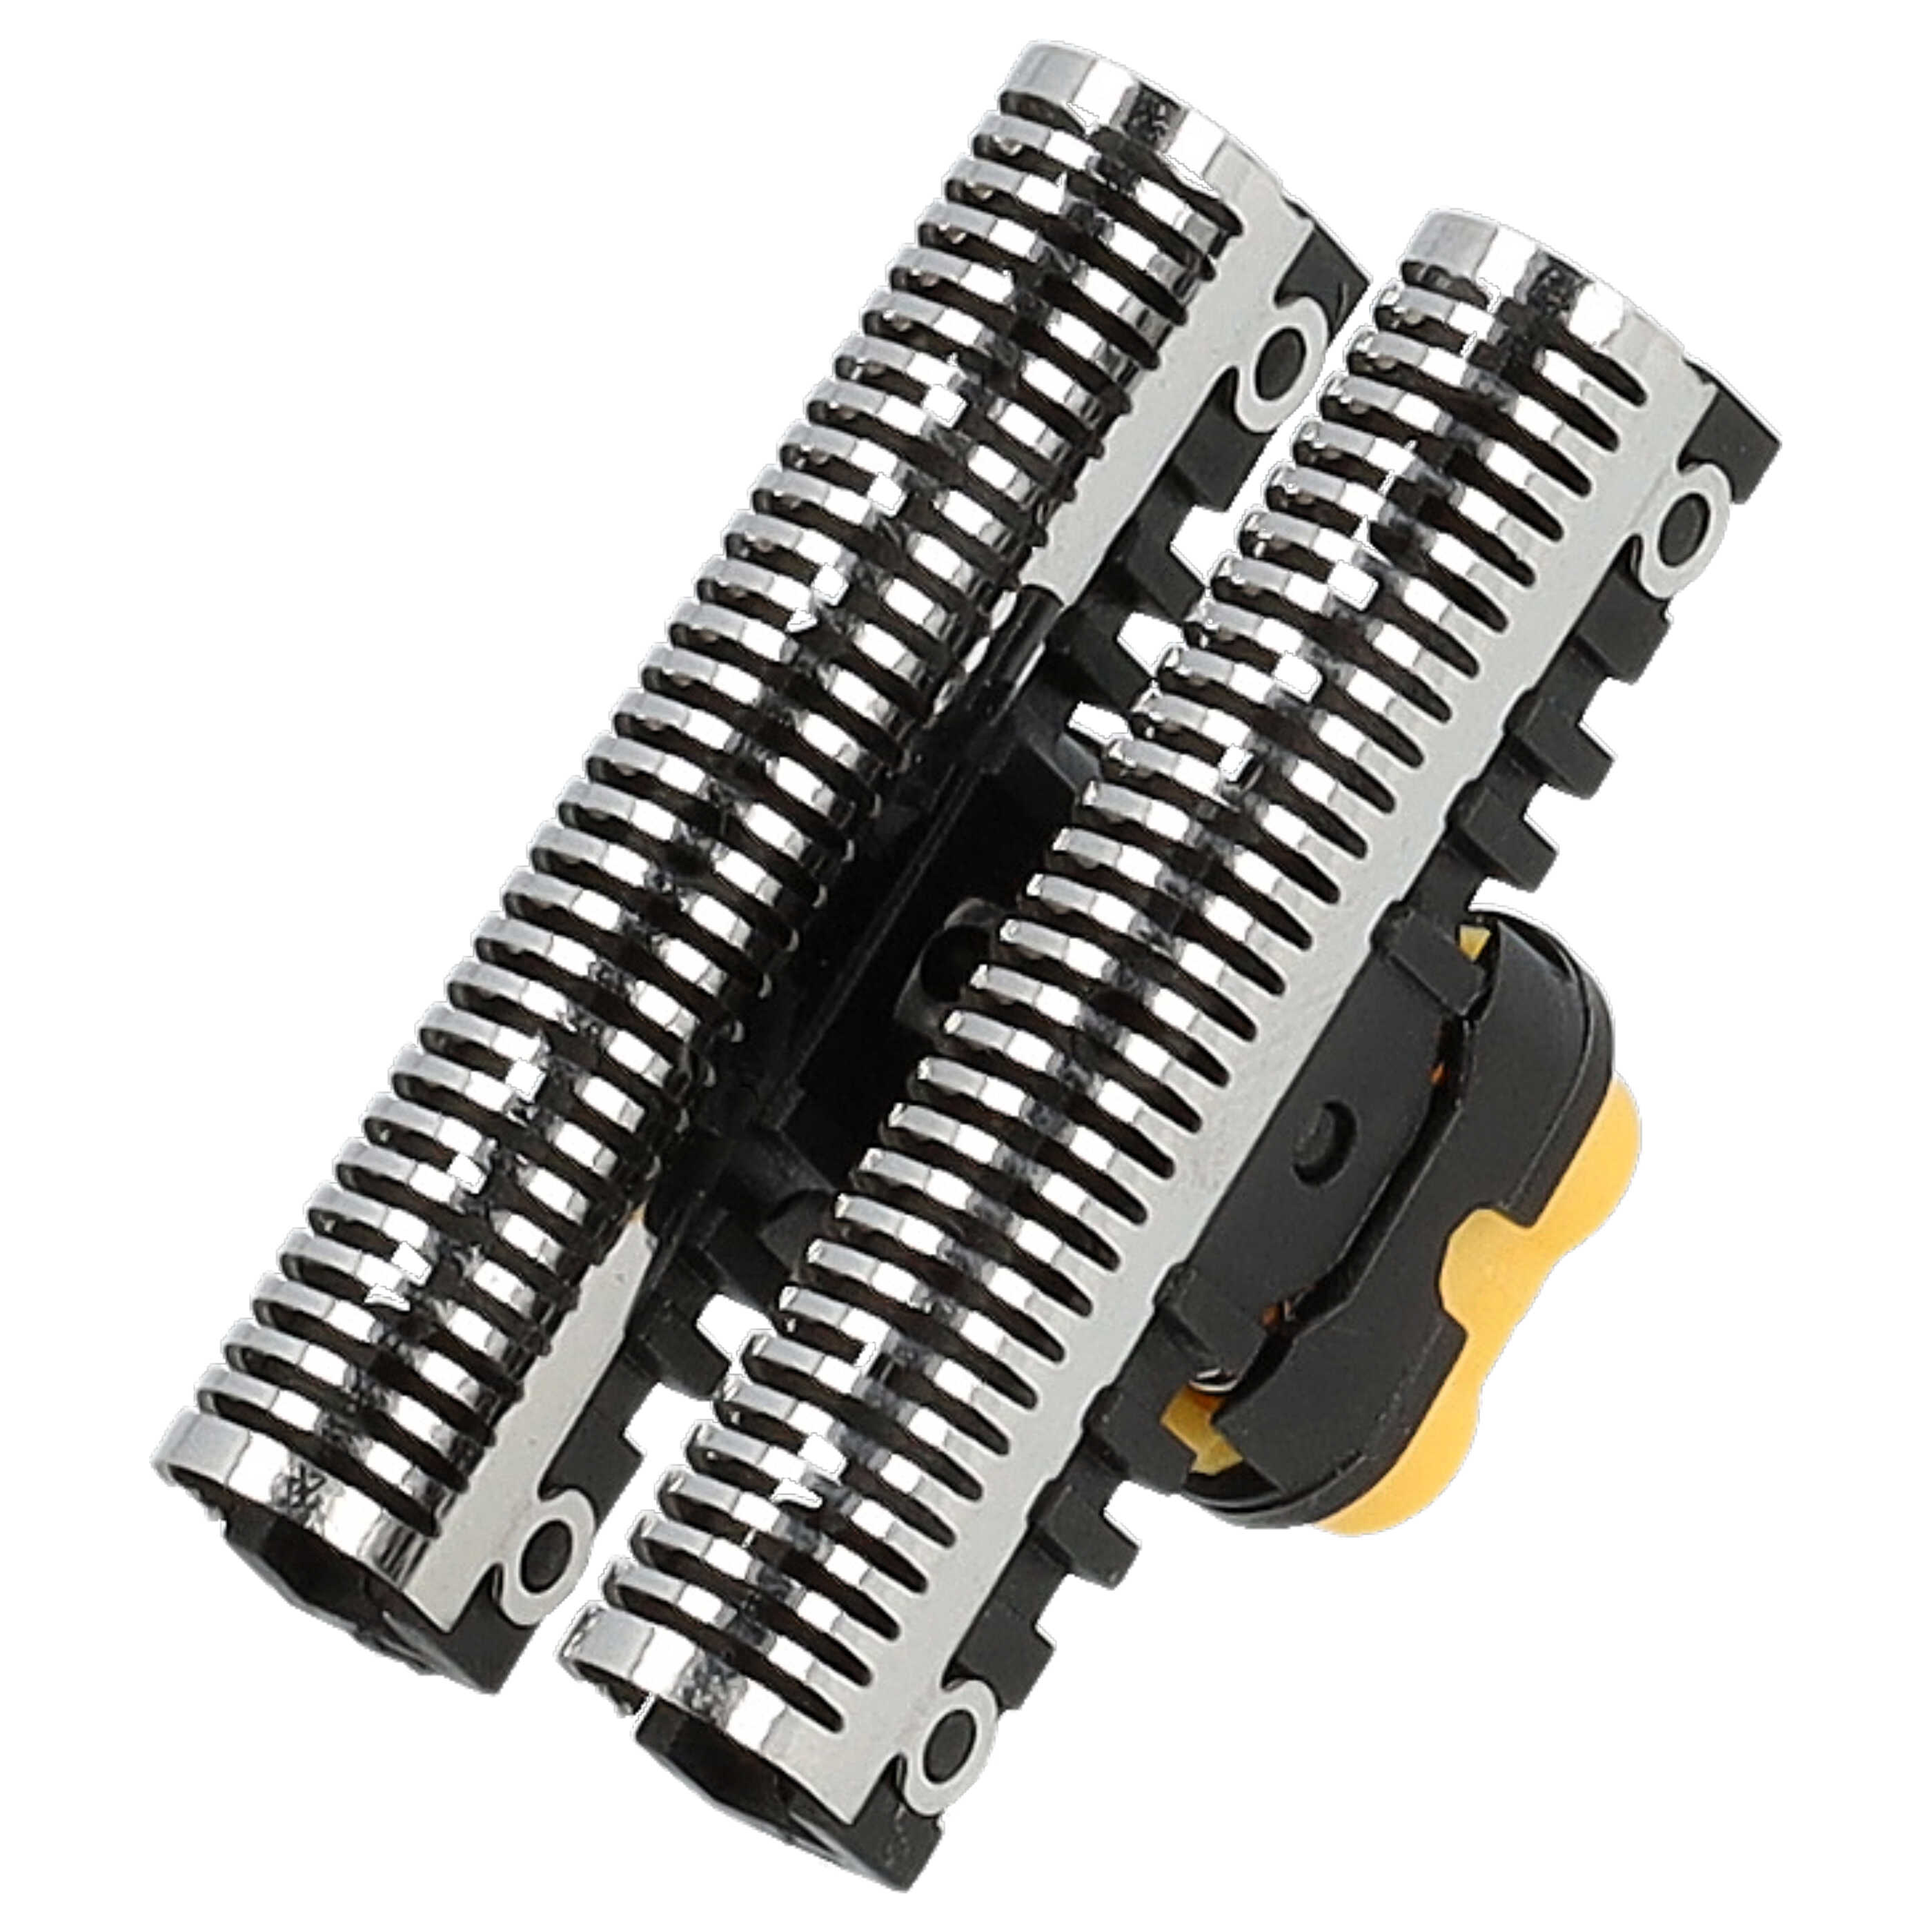 Combipack remplace Braun SB505, 31B, 31S pour rasoir Braun - grille + couteaux, noir/argenté